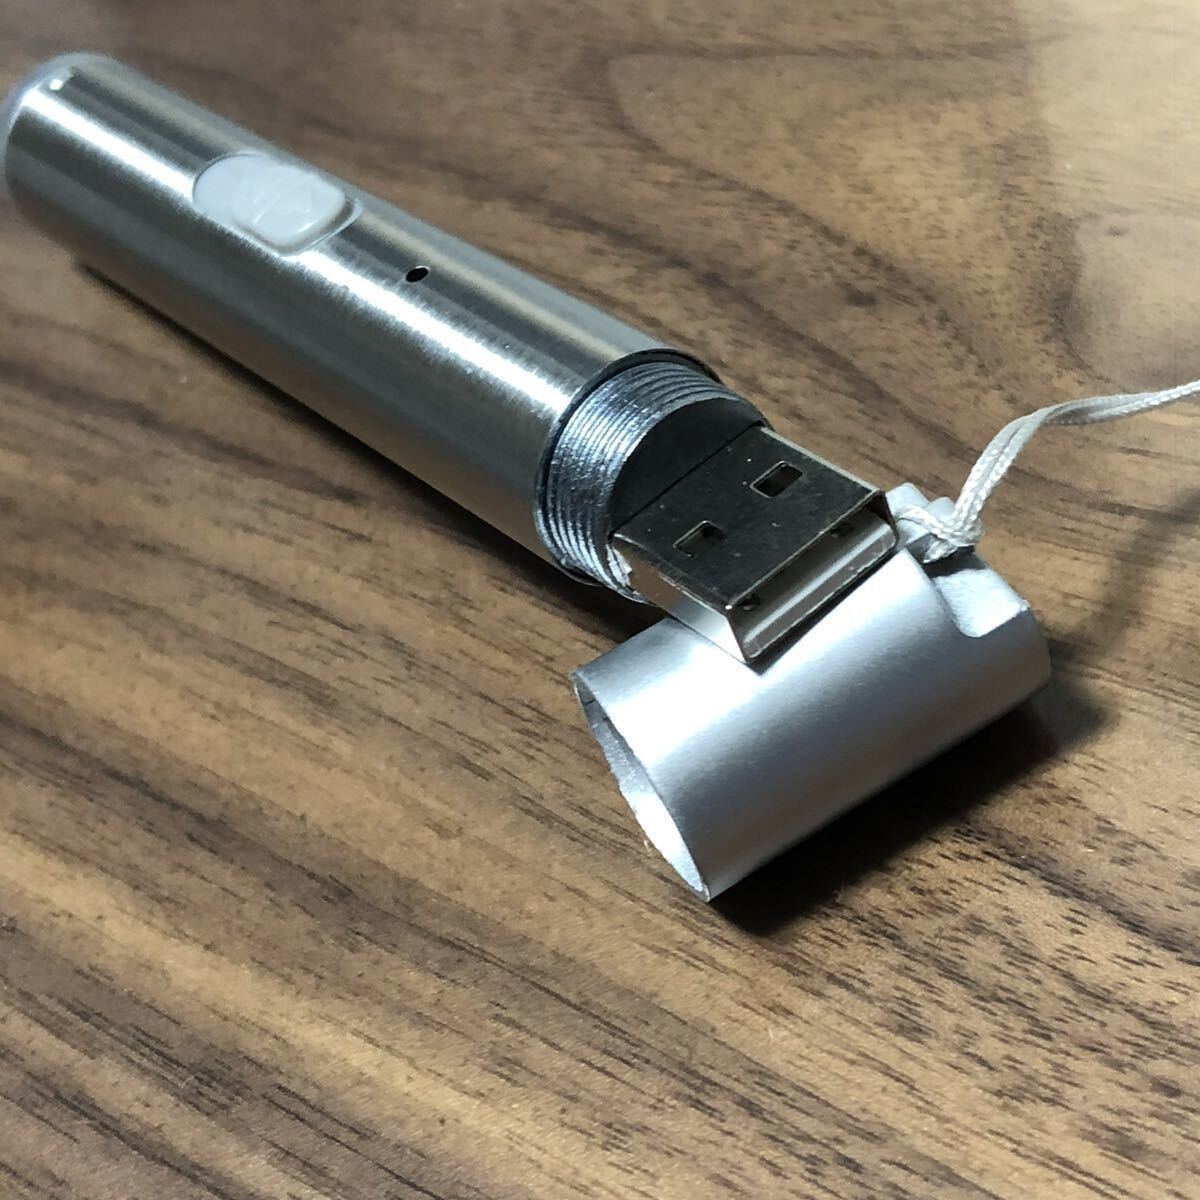 USB充電式ミニフラッシュライト3in1 懐中電灯 ハンディライト コンパクト 多機能